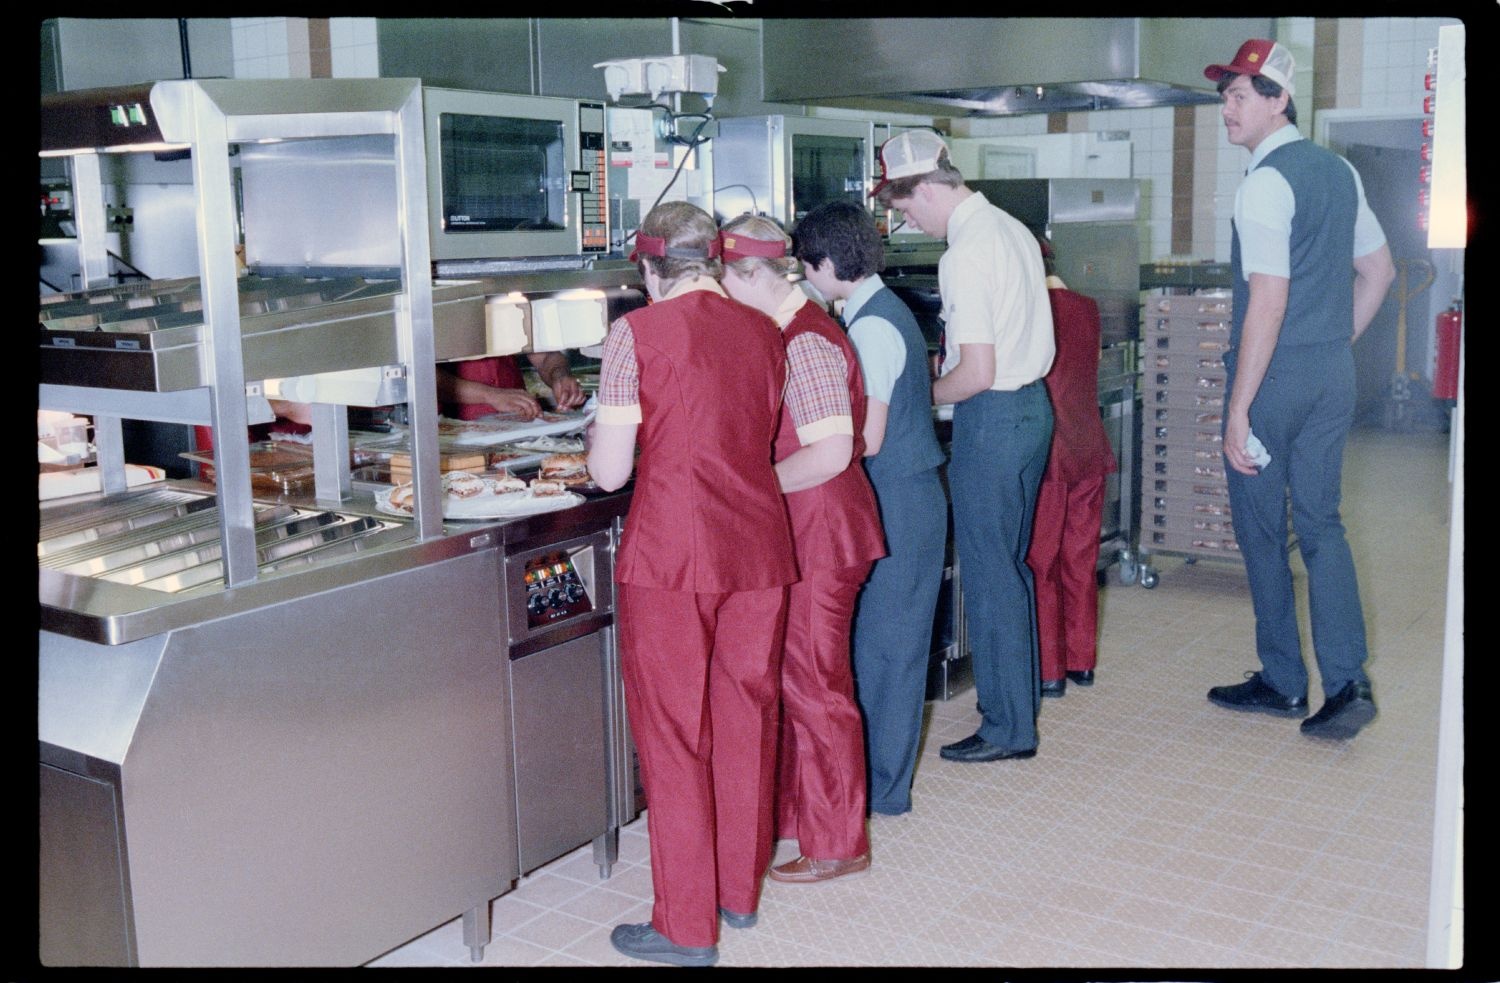 Fotografie: Eröffnung einer Burger King Filiale an der Truman Plaza in Berlin-Dahlem (AlliiertenMuseum/U.S. Army Photograph Public Domain Mark)